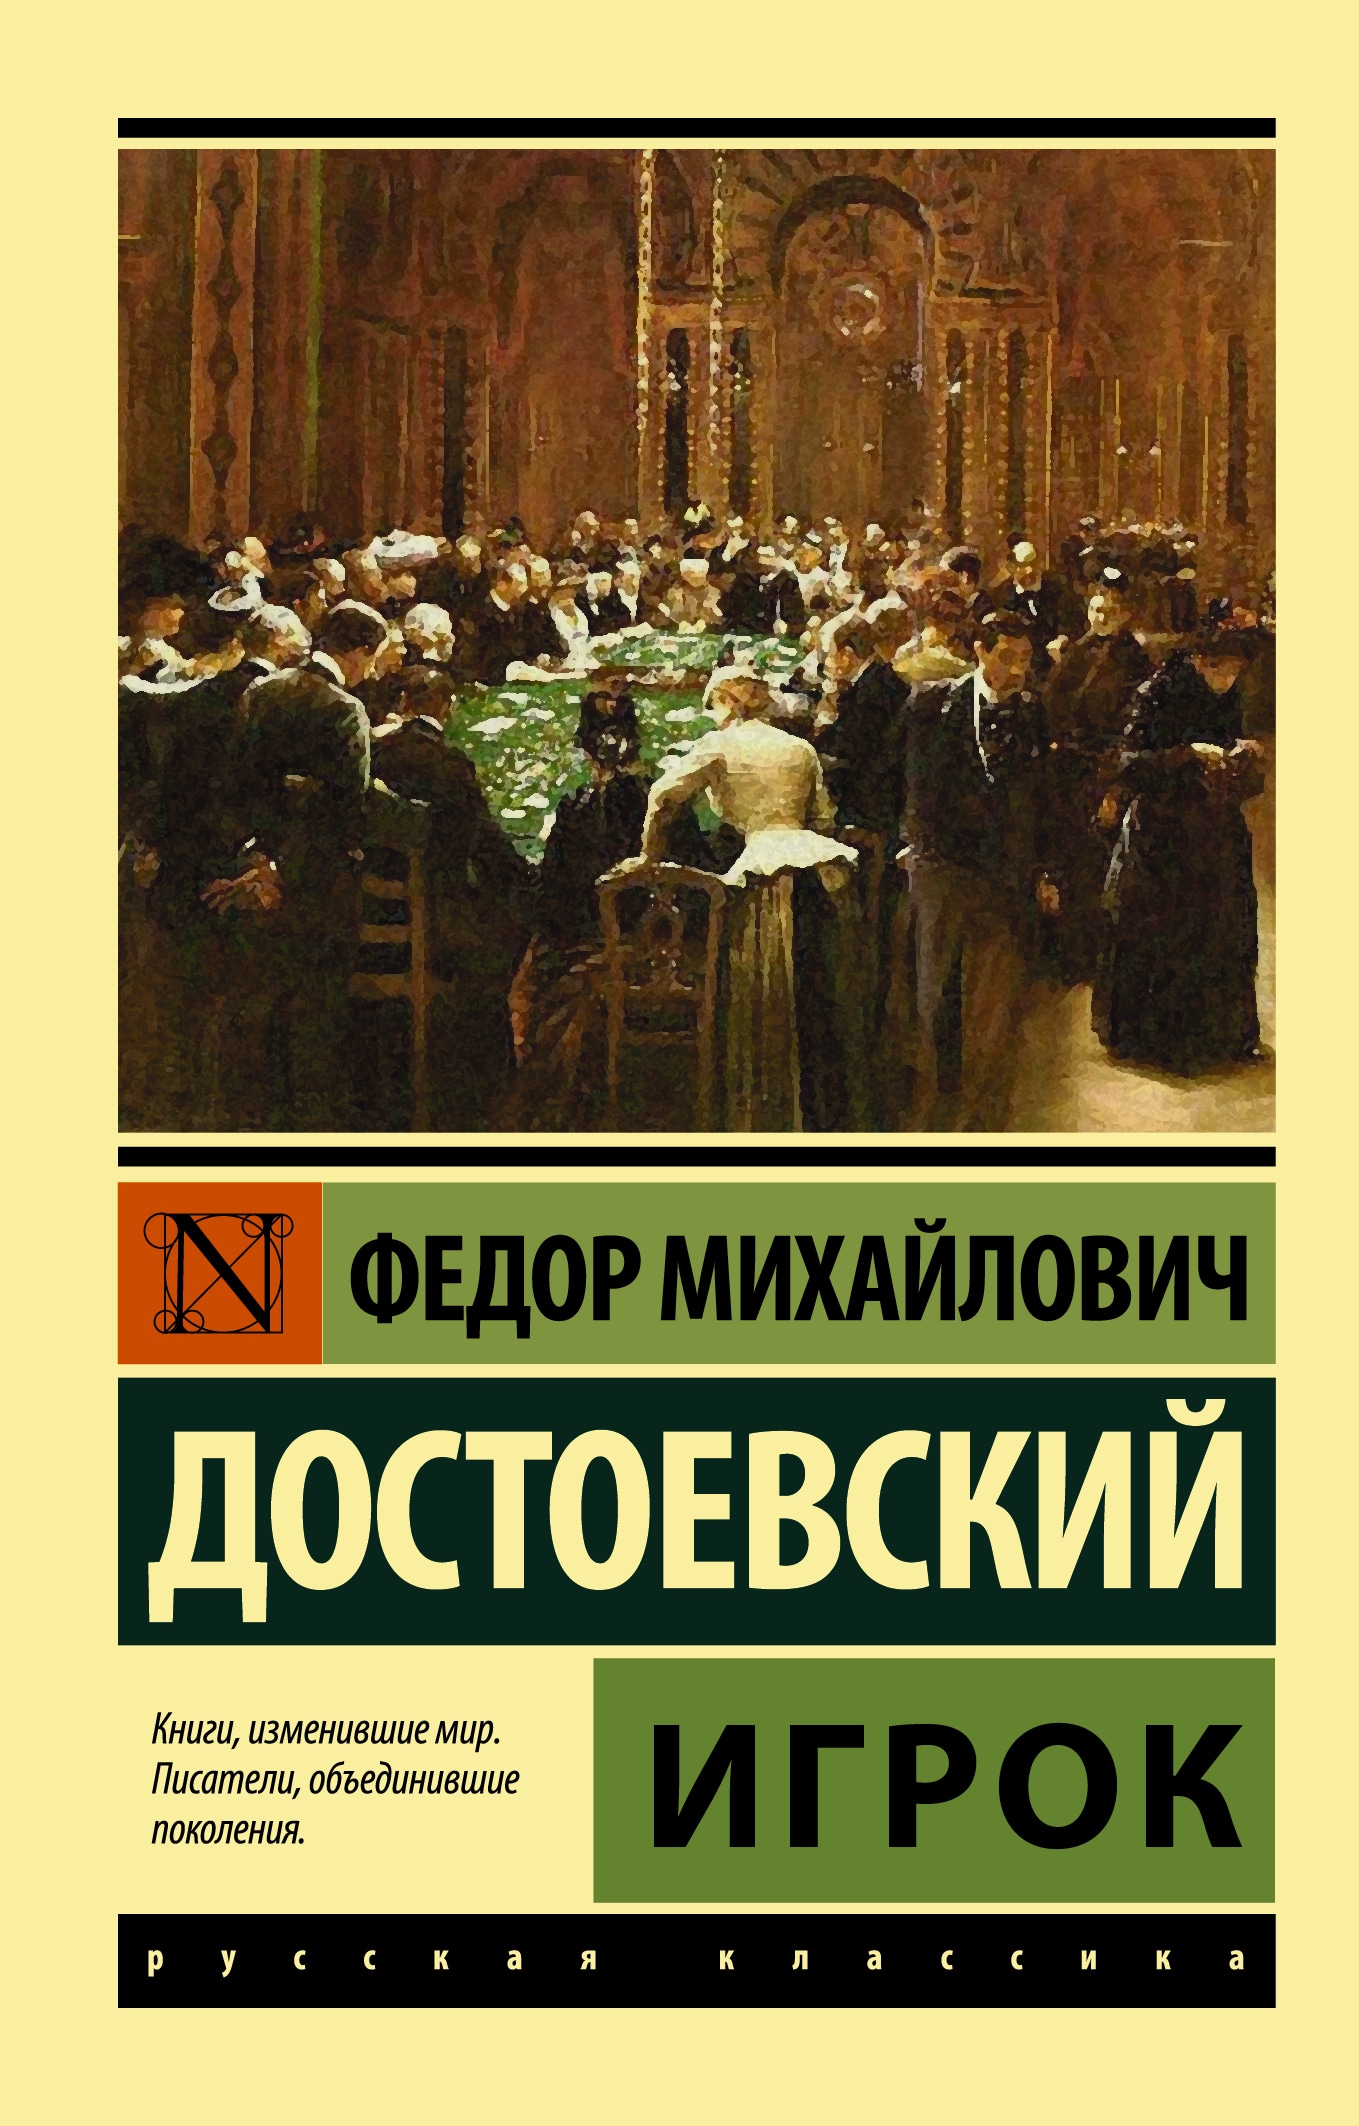 Книга «Игрок» Федор Достоевский — 23 сентября 2021 г.